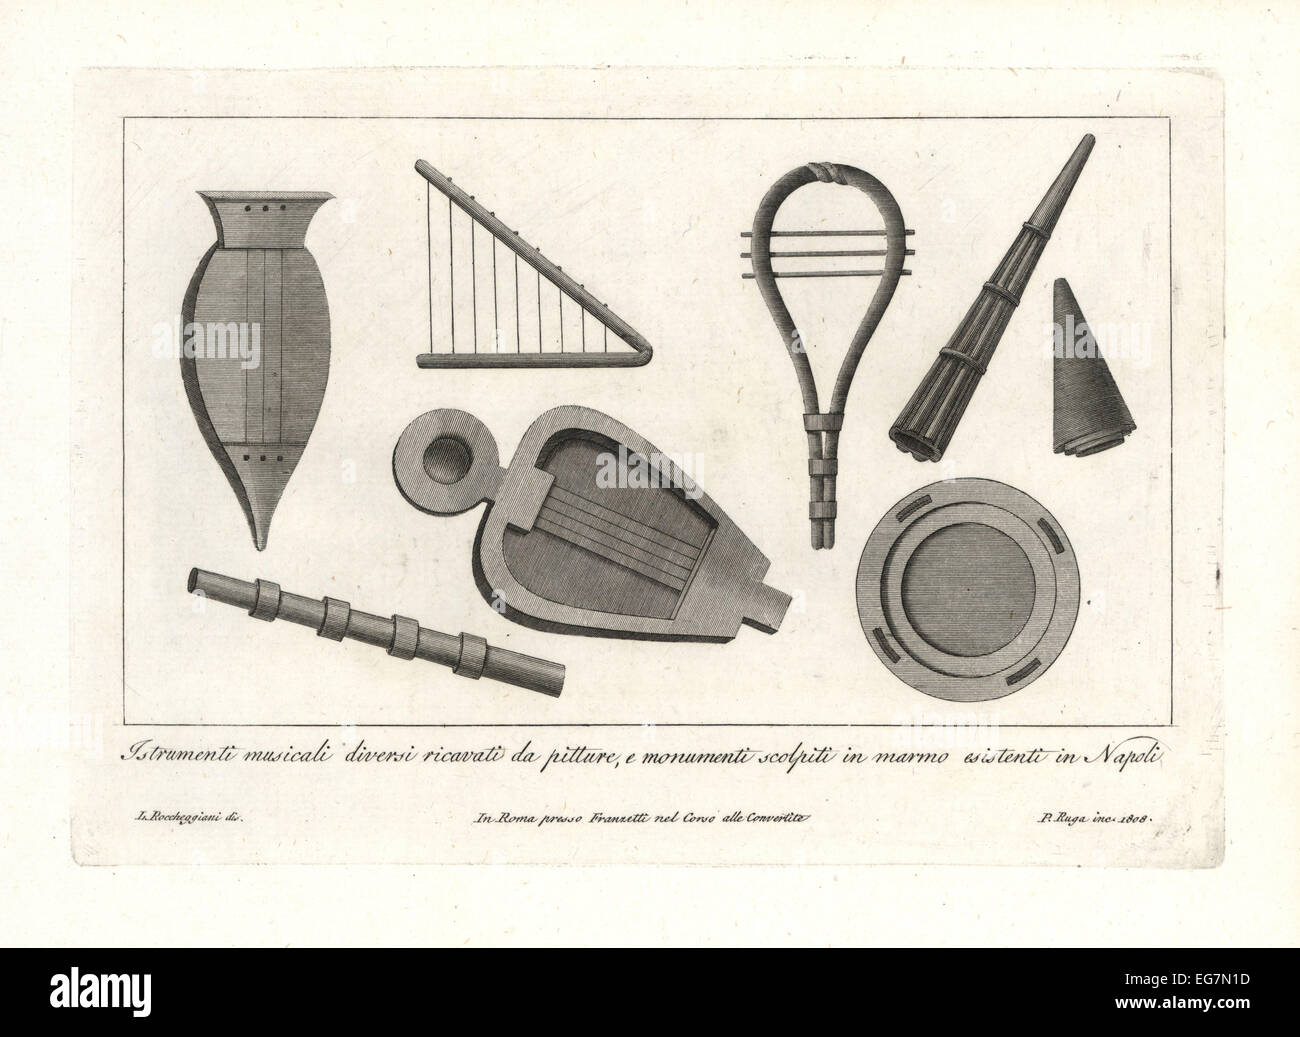 Antike römische Musikinstrumente: Sistrum, Cithara, laute, Leier, Trigono,  Horn und Tamburin Stockfotografie - Alamy